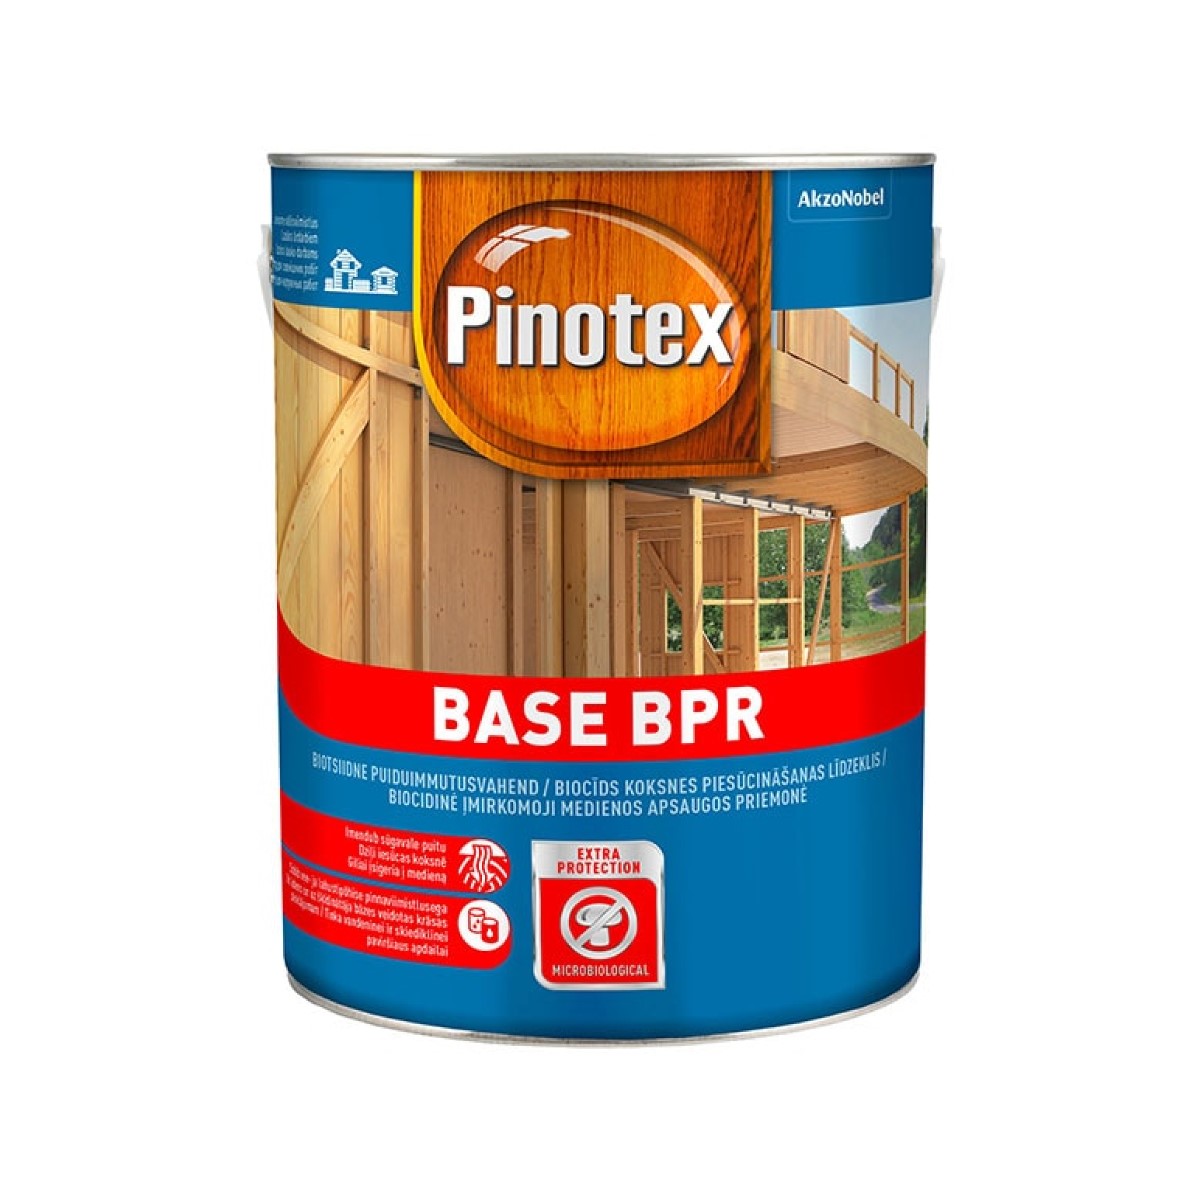 Pinotex Base BPR Biocīds koksnes piesūcināšanas līdzeklis, bezkrāsains 2.5L